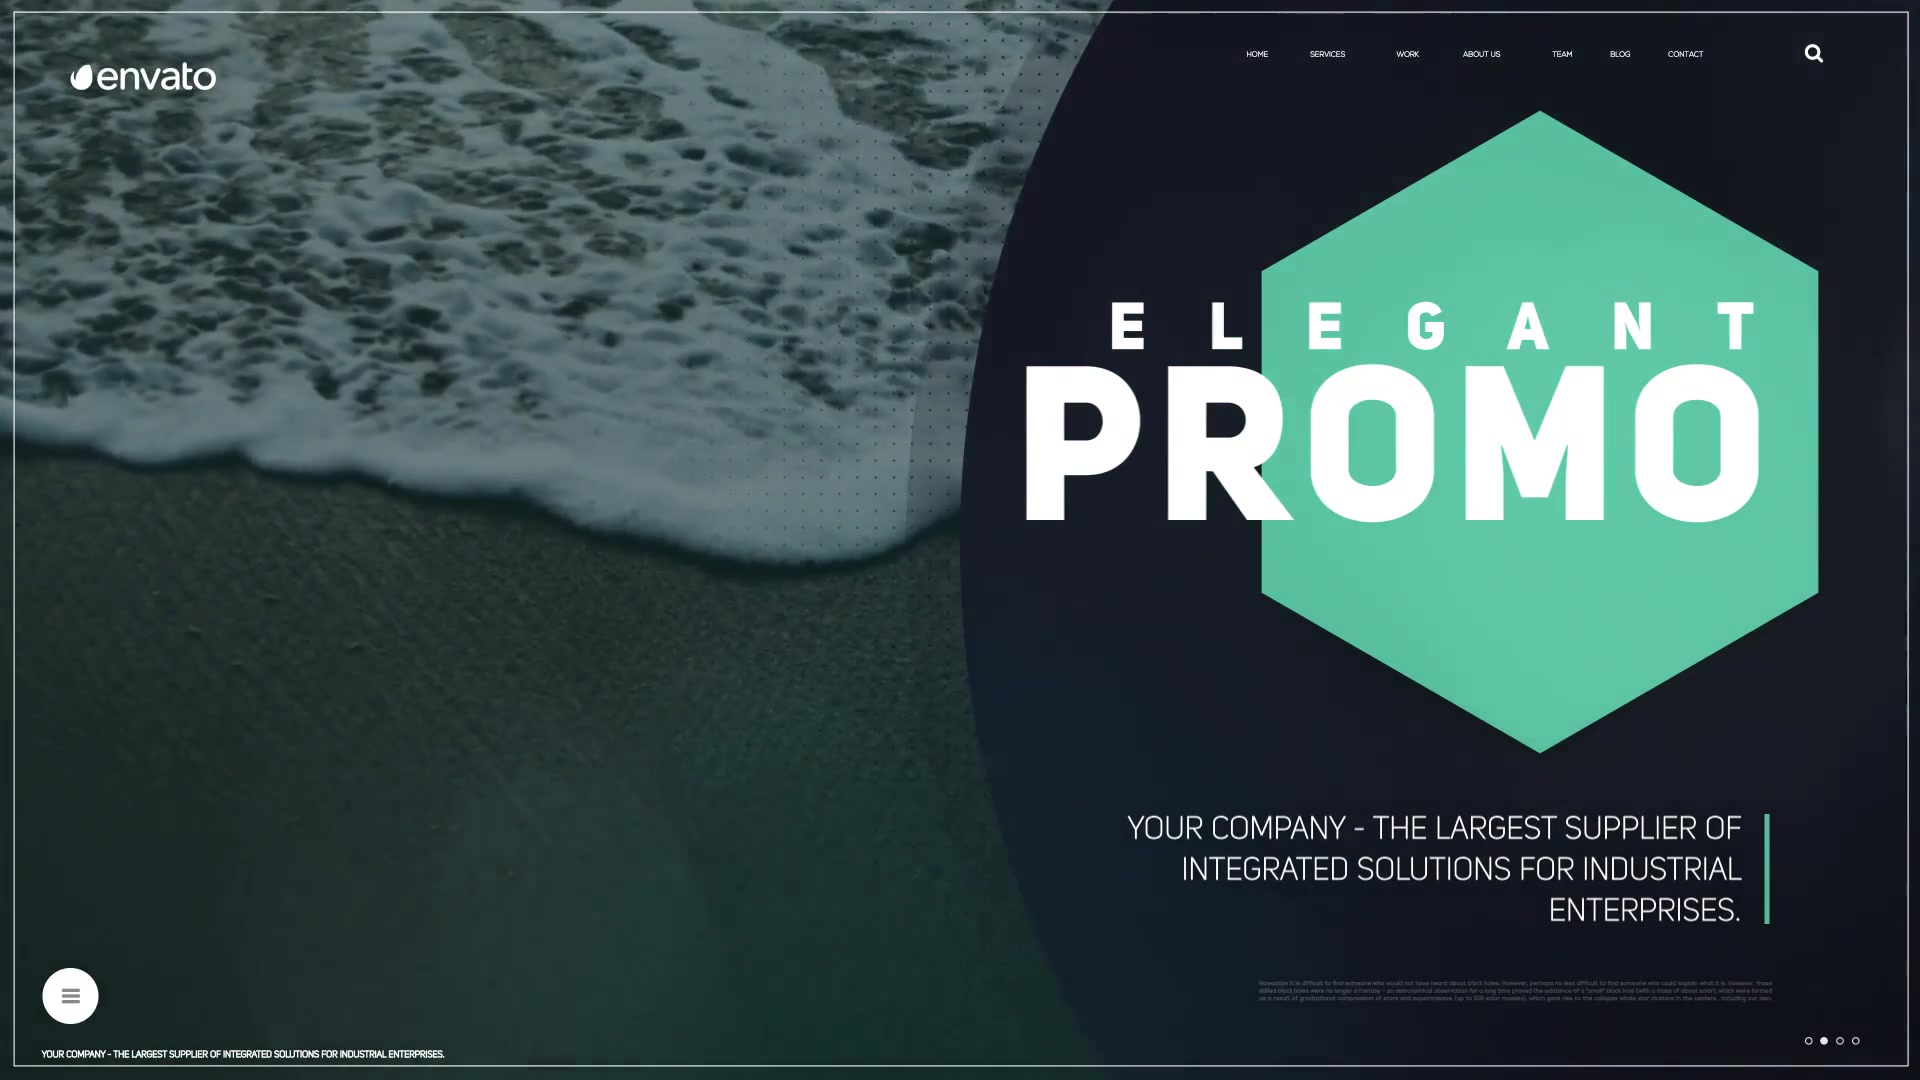 Minimal Promo For Premiere Pro Videohive 32728347 Premiere Pro Image 5